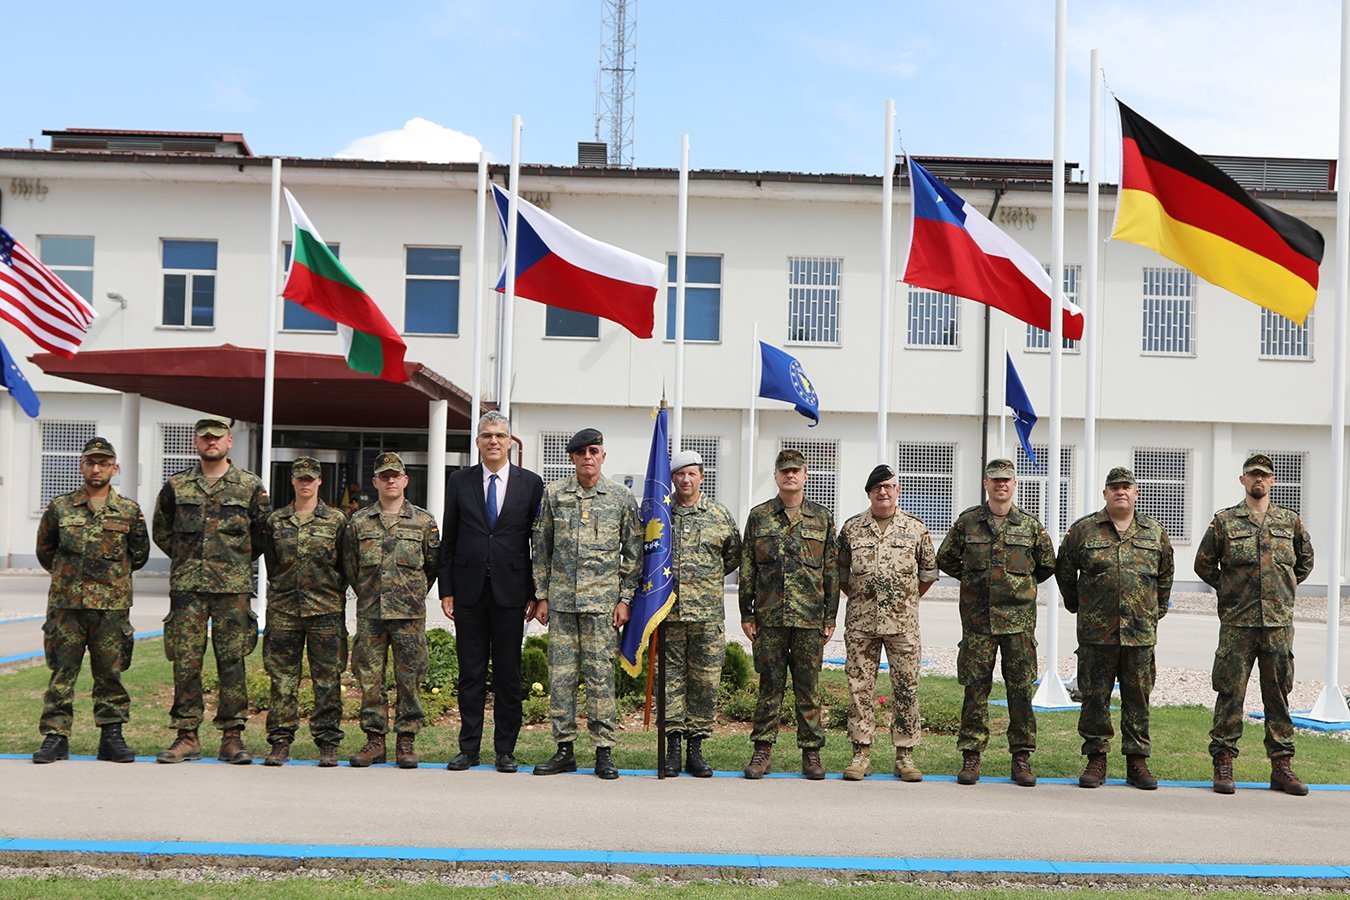 Български взвод от националния военен контингент на ЕС „Алтеа“ в БиХ участва в церемонията по издигане националния флаг на ФРГермания в чест на присъединяването й към силите на EUFOR